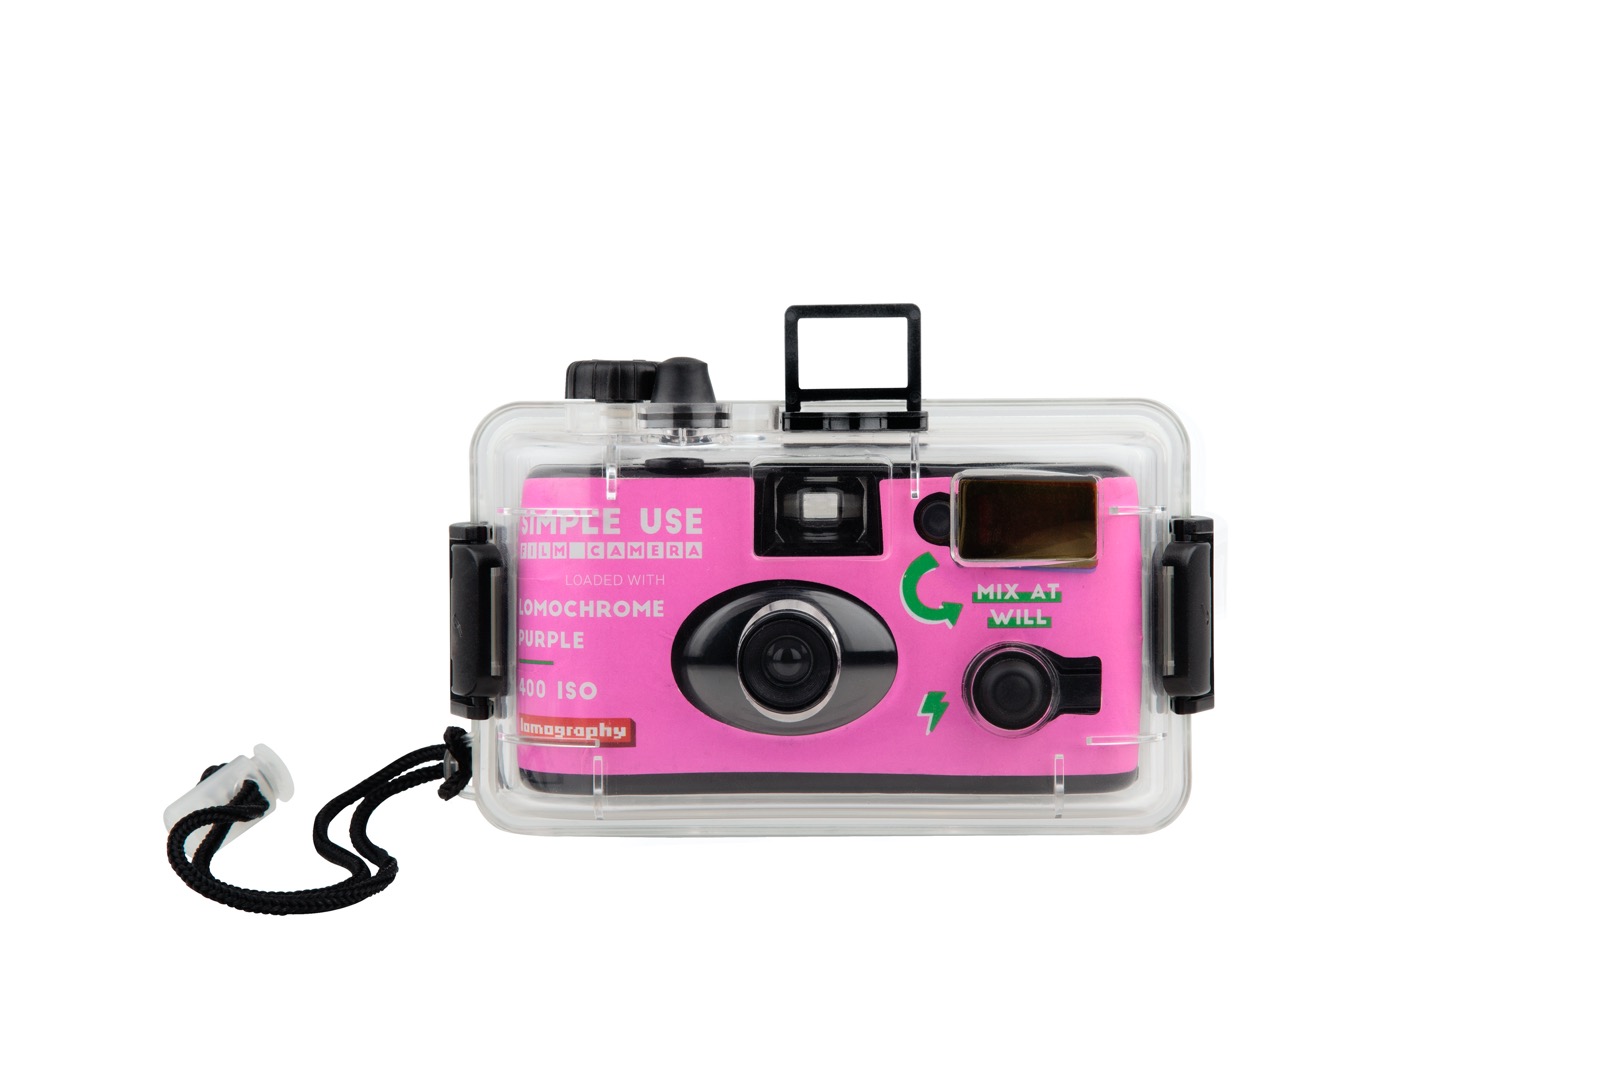 Simple Use Film Camera & Underwater Case